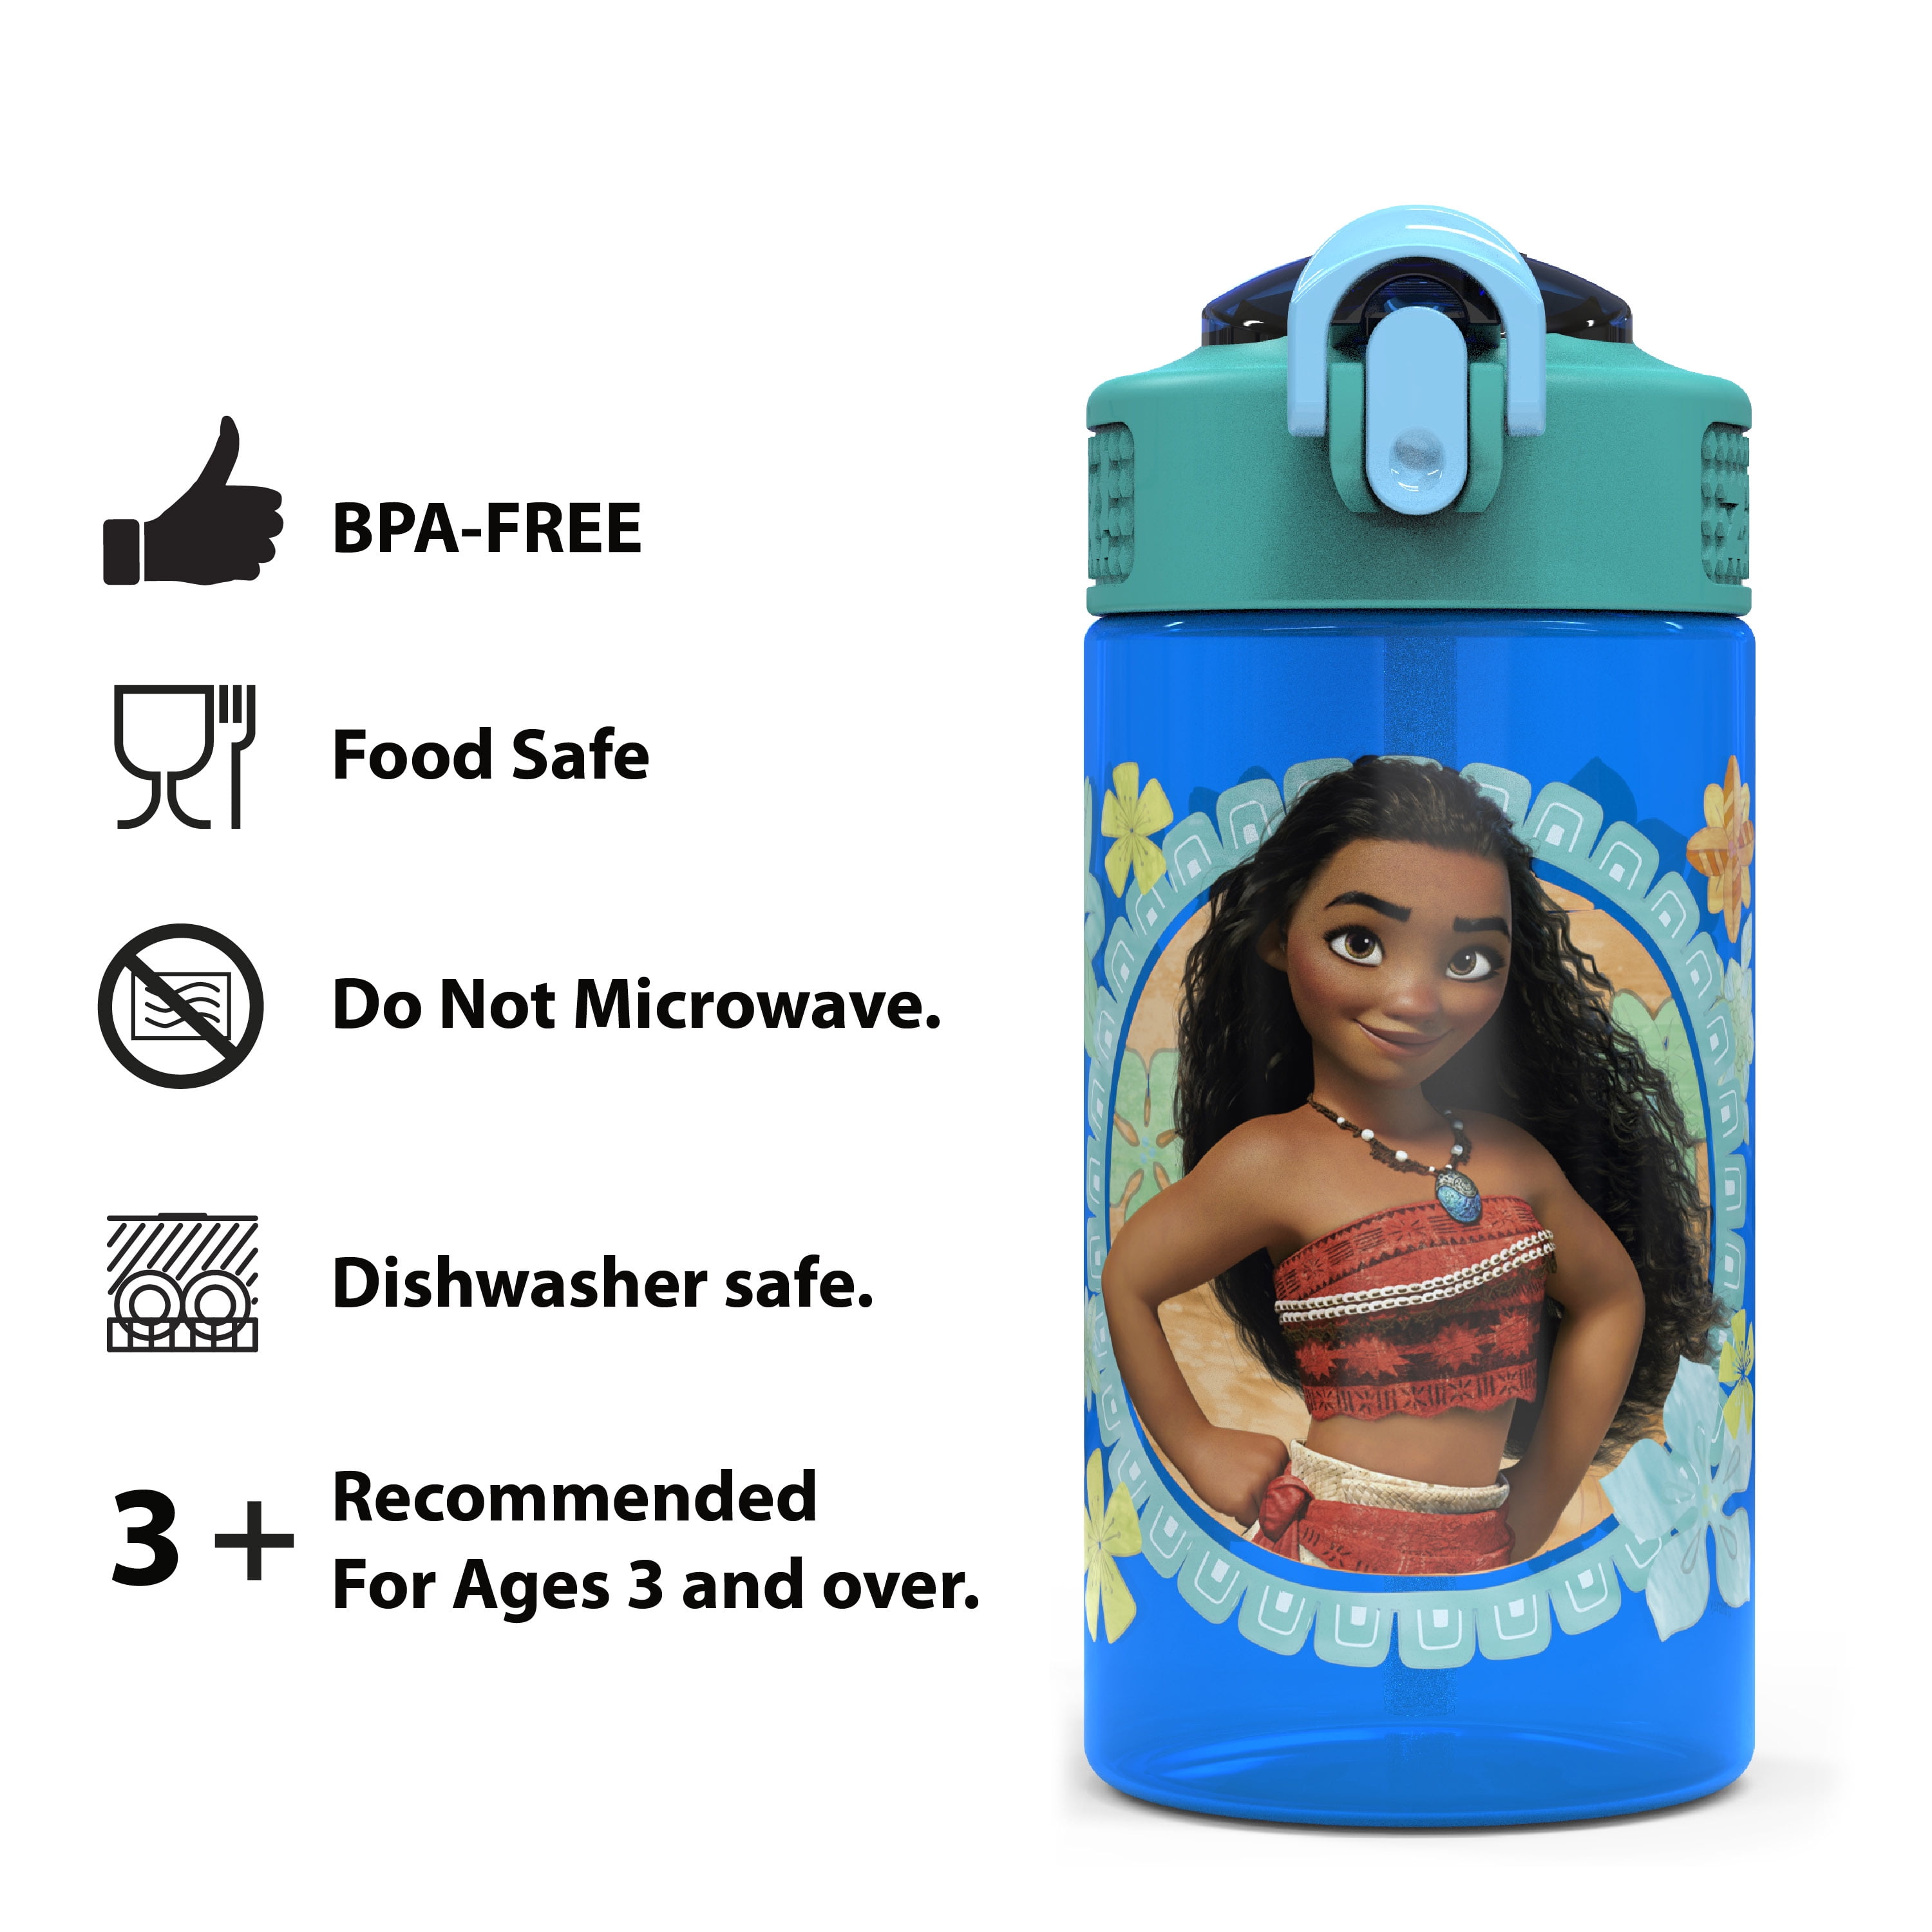 Disney Park Action Blue & Purple Princess Spout Water Bottle, 16 oz.